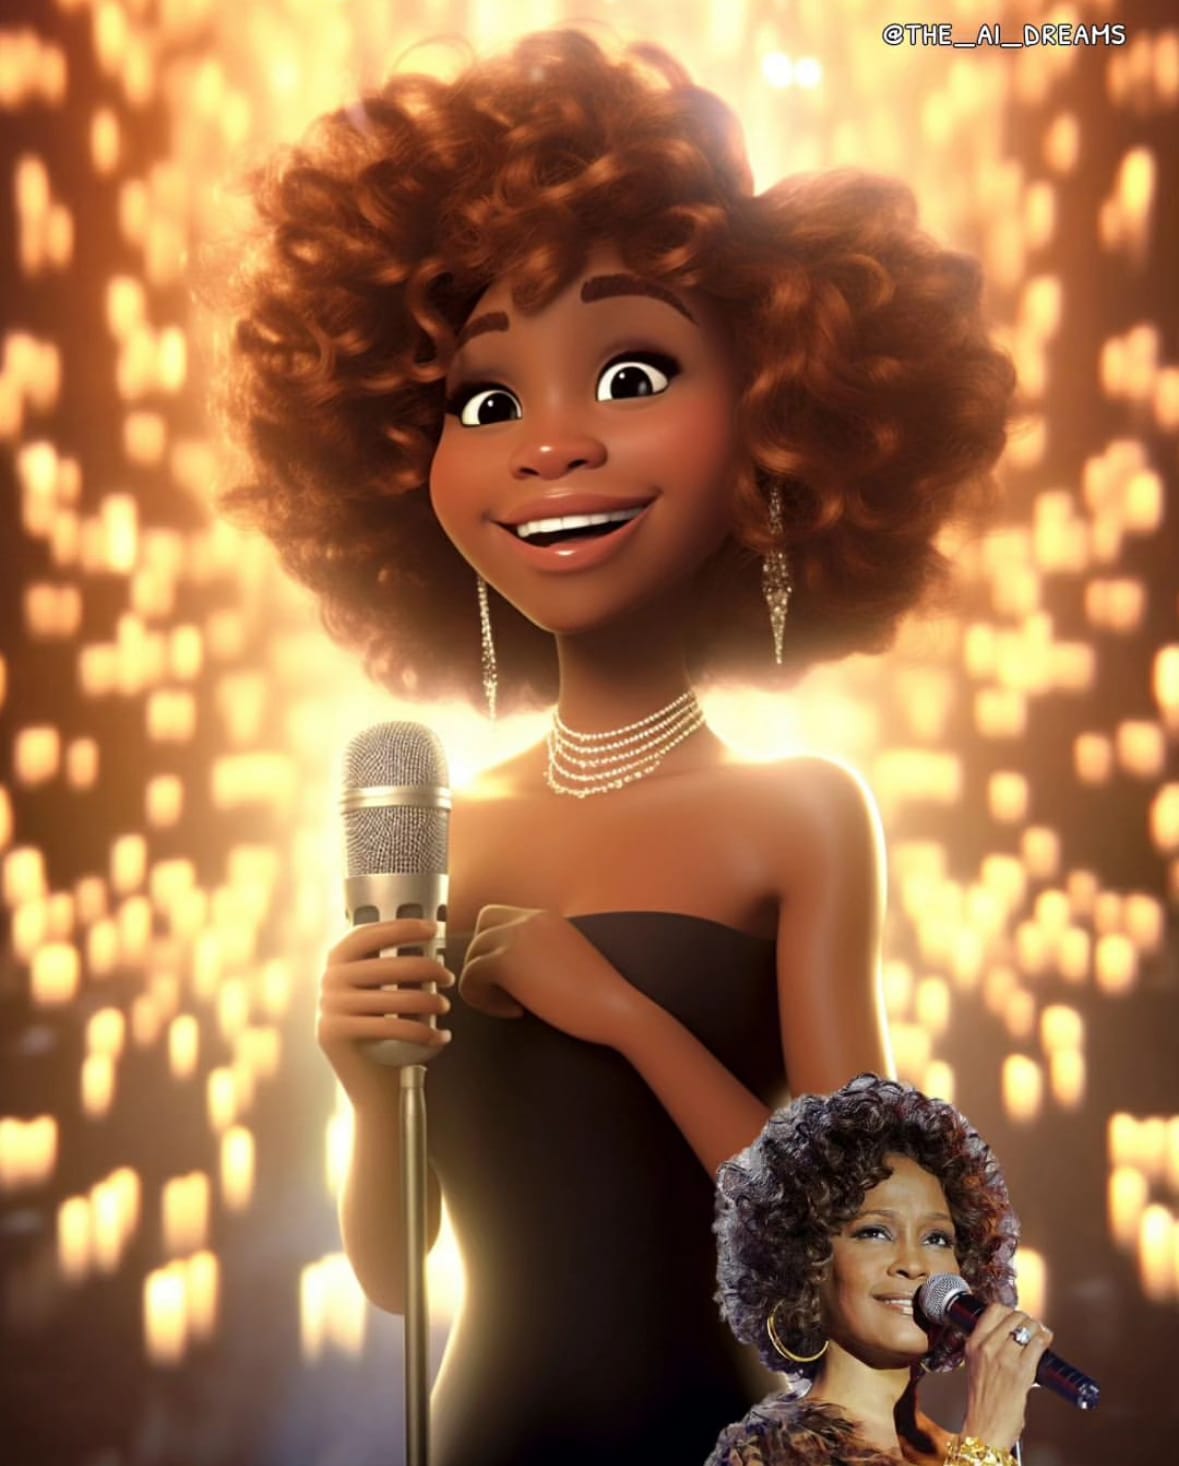 นักร้องคนดังระดับโลก ตัวละครแอนิเมชั่น Disney Pixar จาก AI